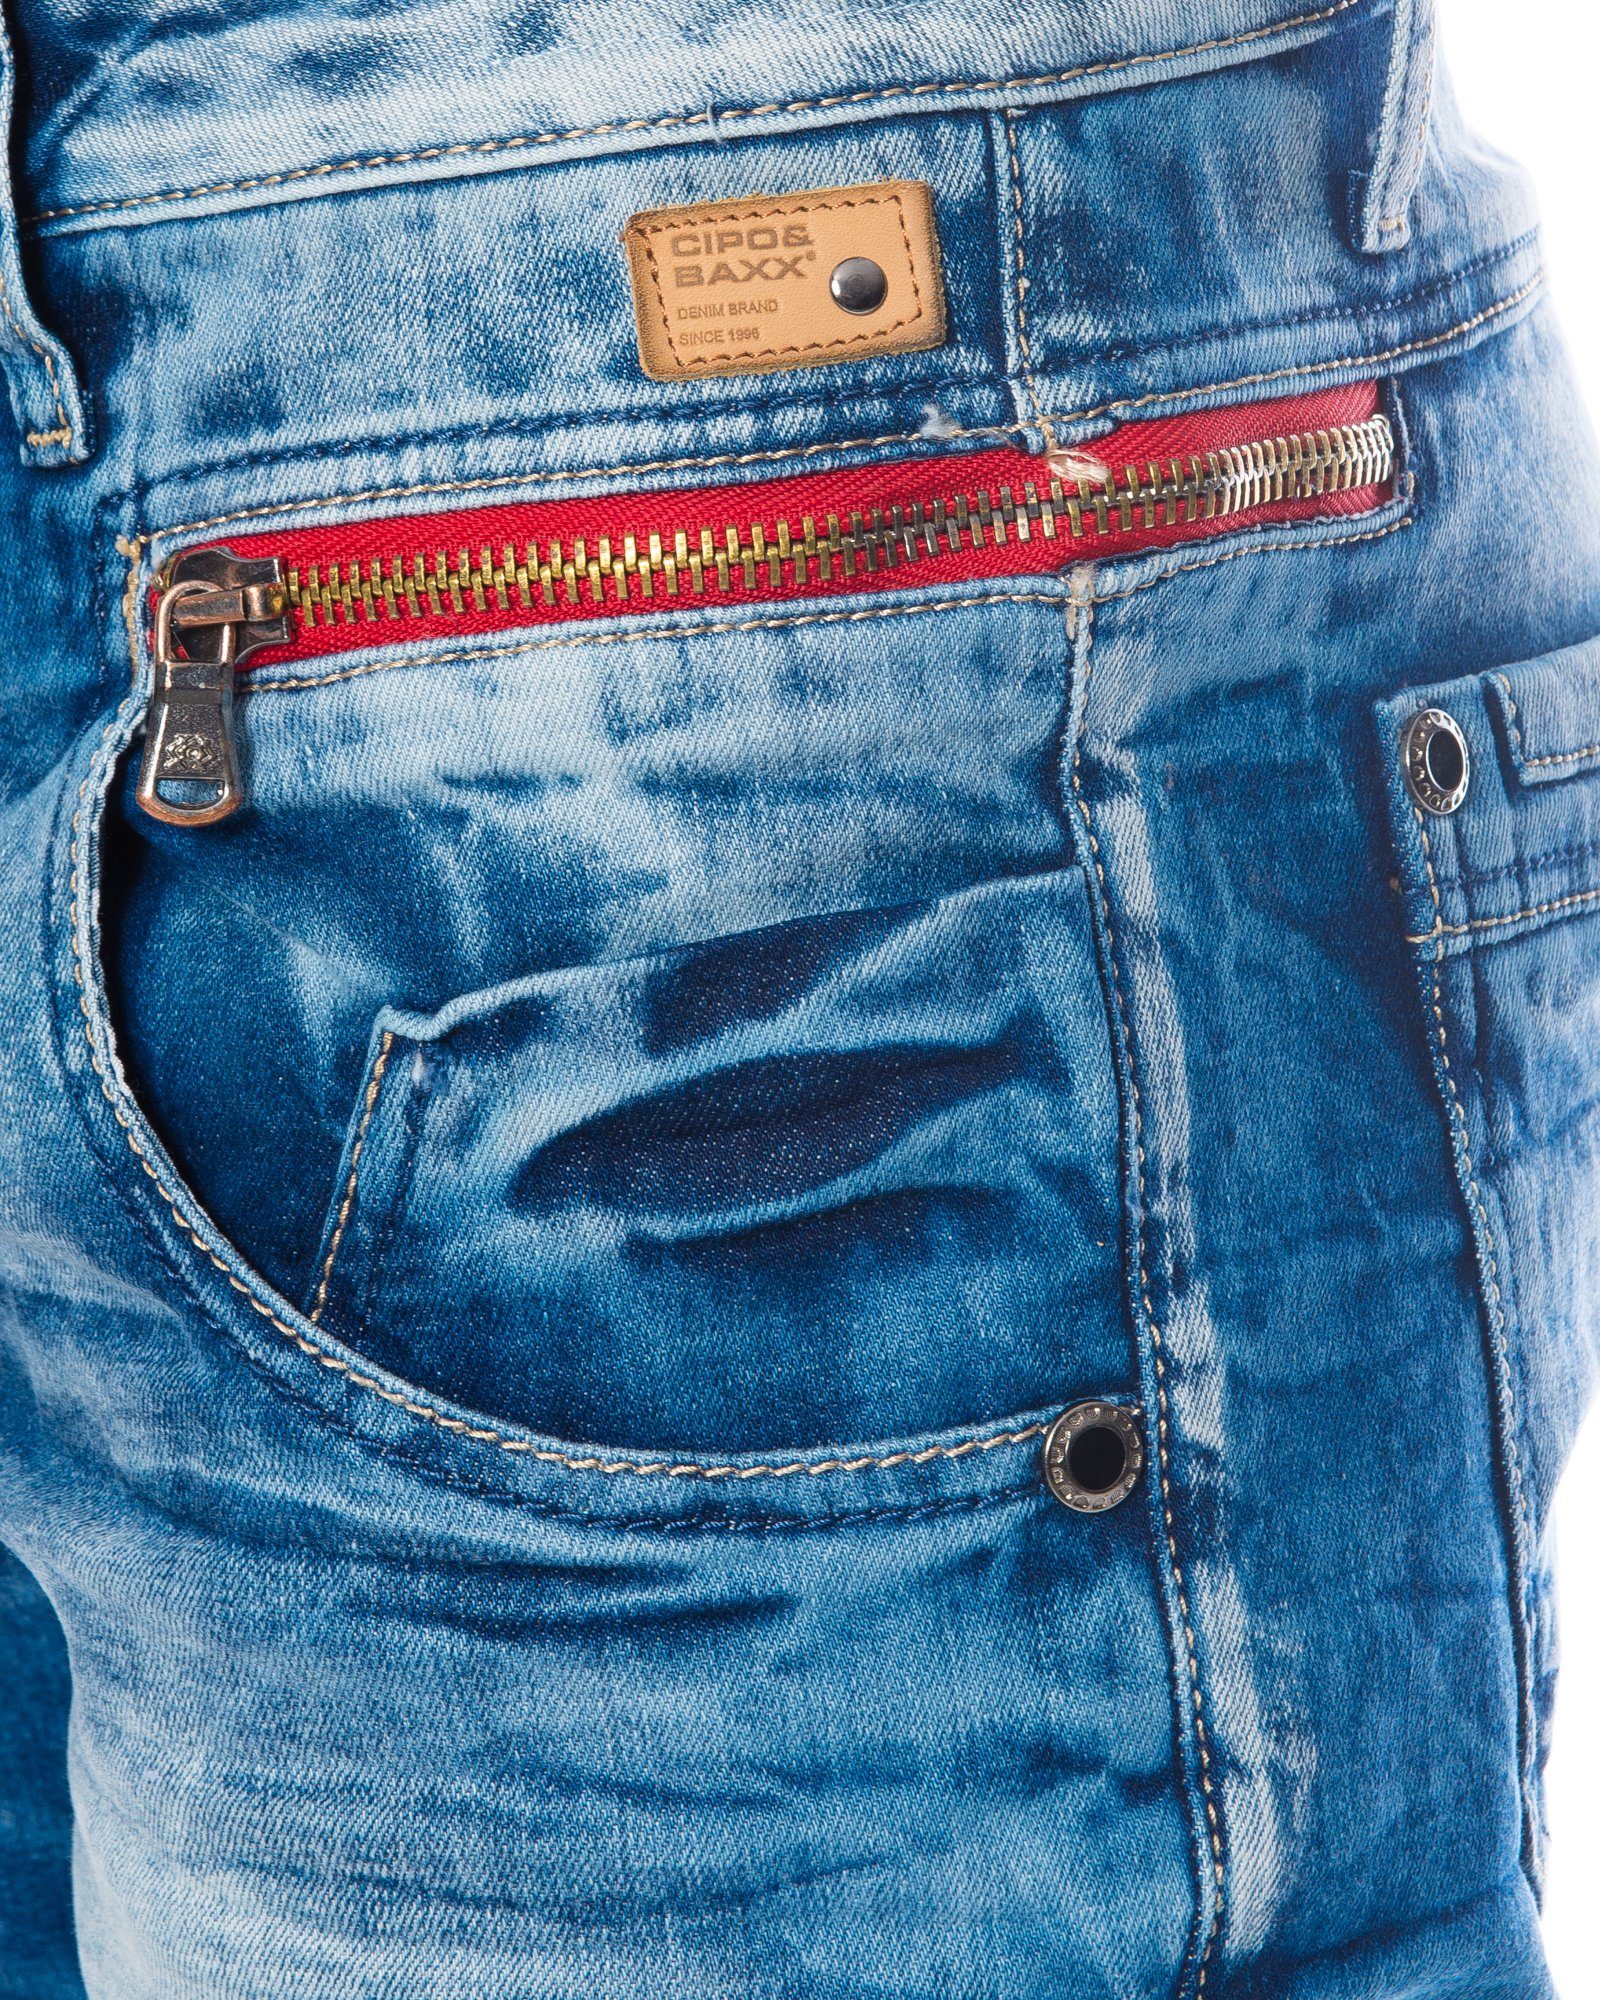 Freizeithose Baxx Jeans an Herren und mit modischem mit Münztaschen & hose Slim-fit-Jeans Stoff Cipo farbigem Design den Stretch